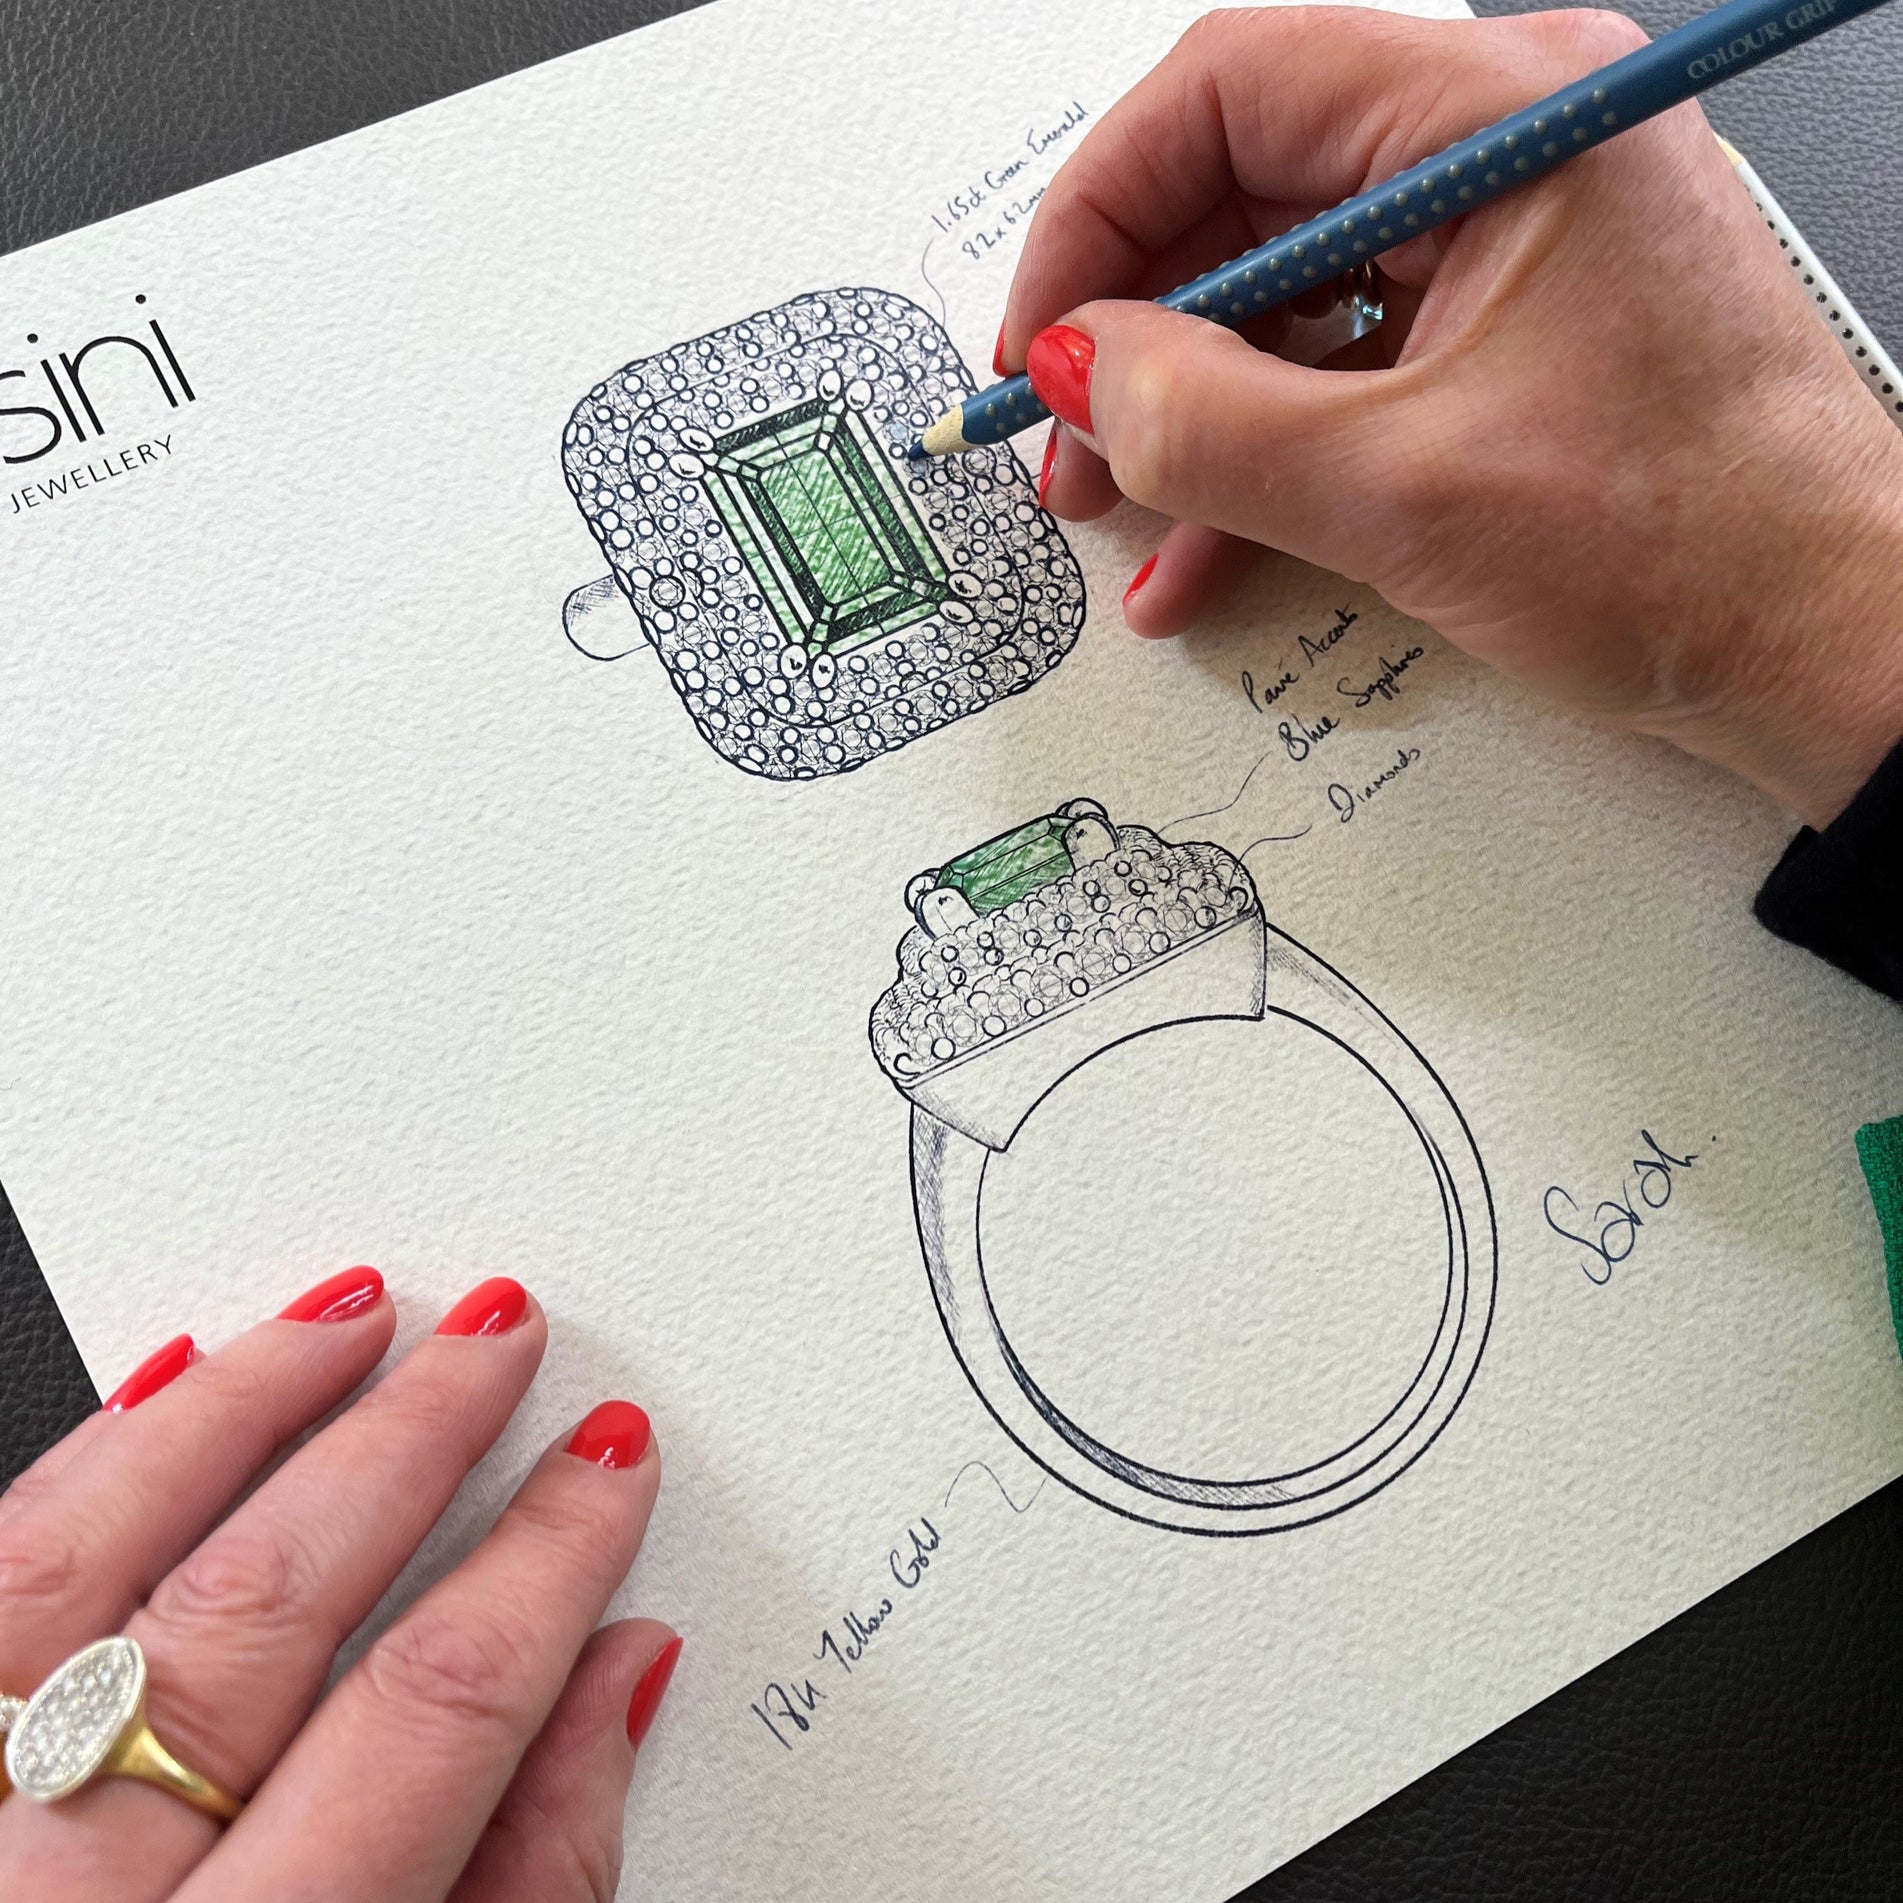 Sarah designing a bespoke emerald ring